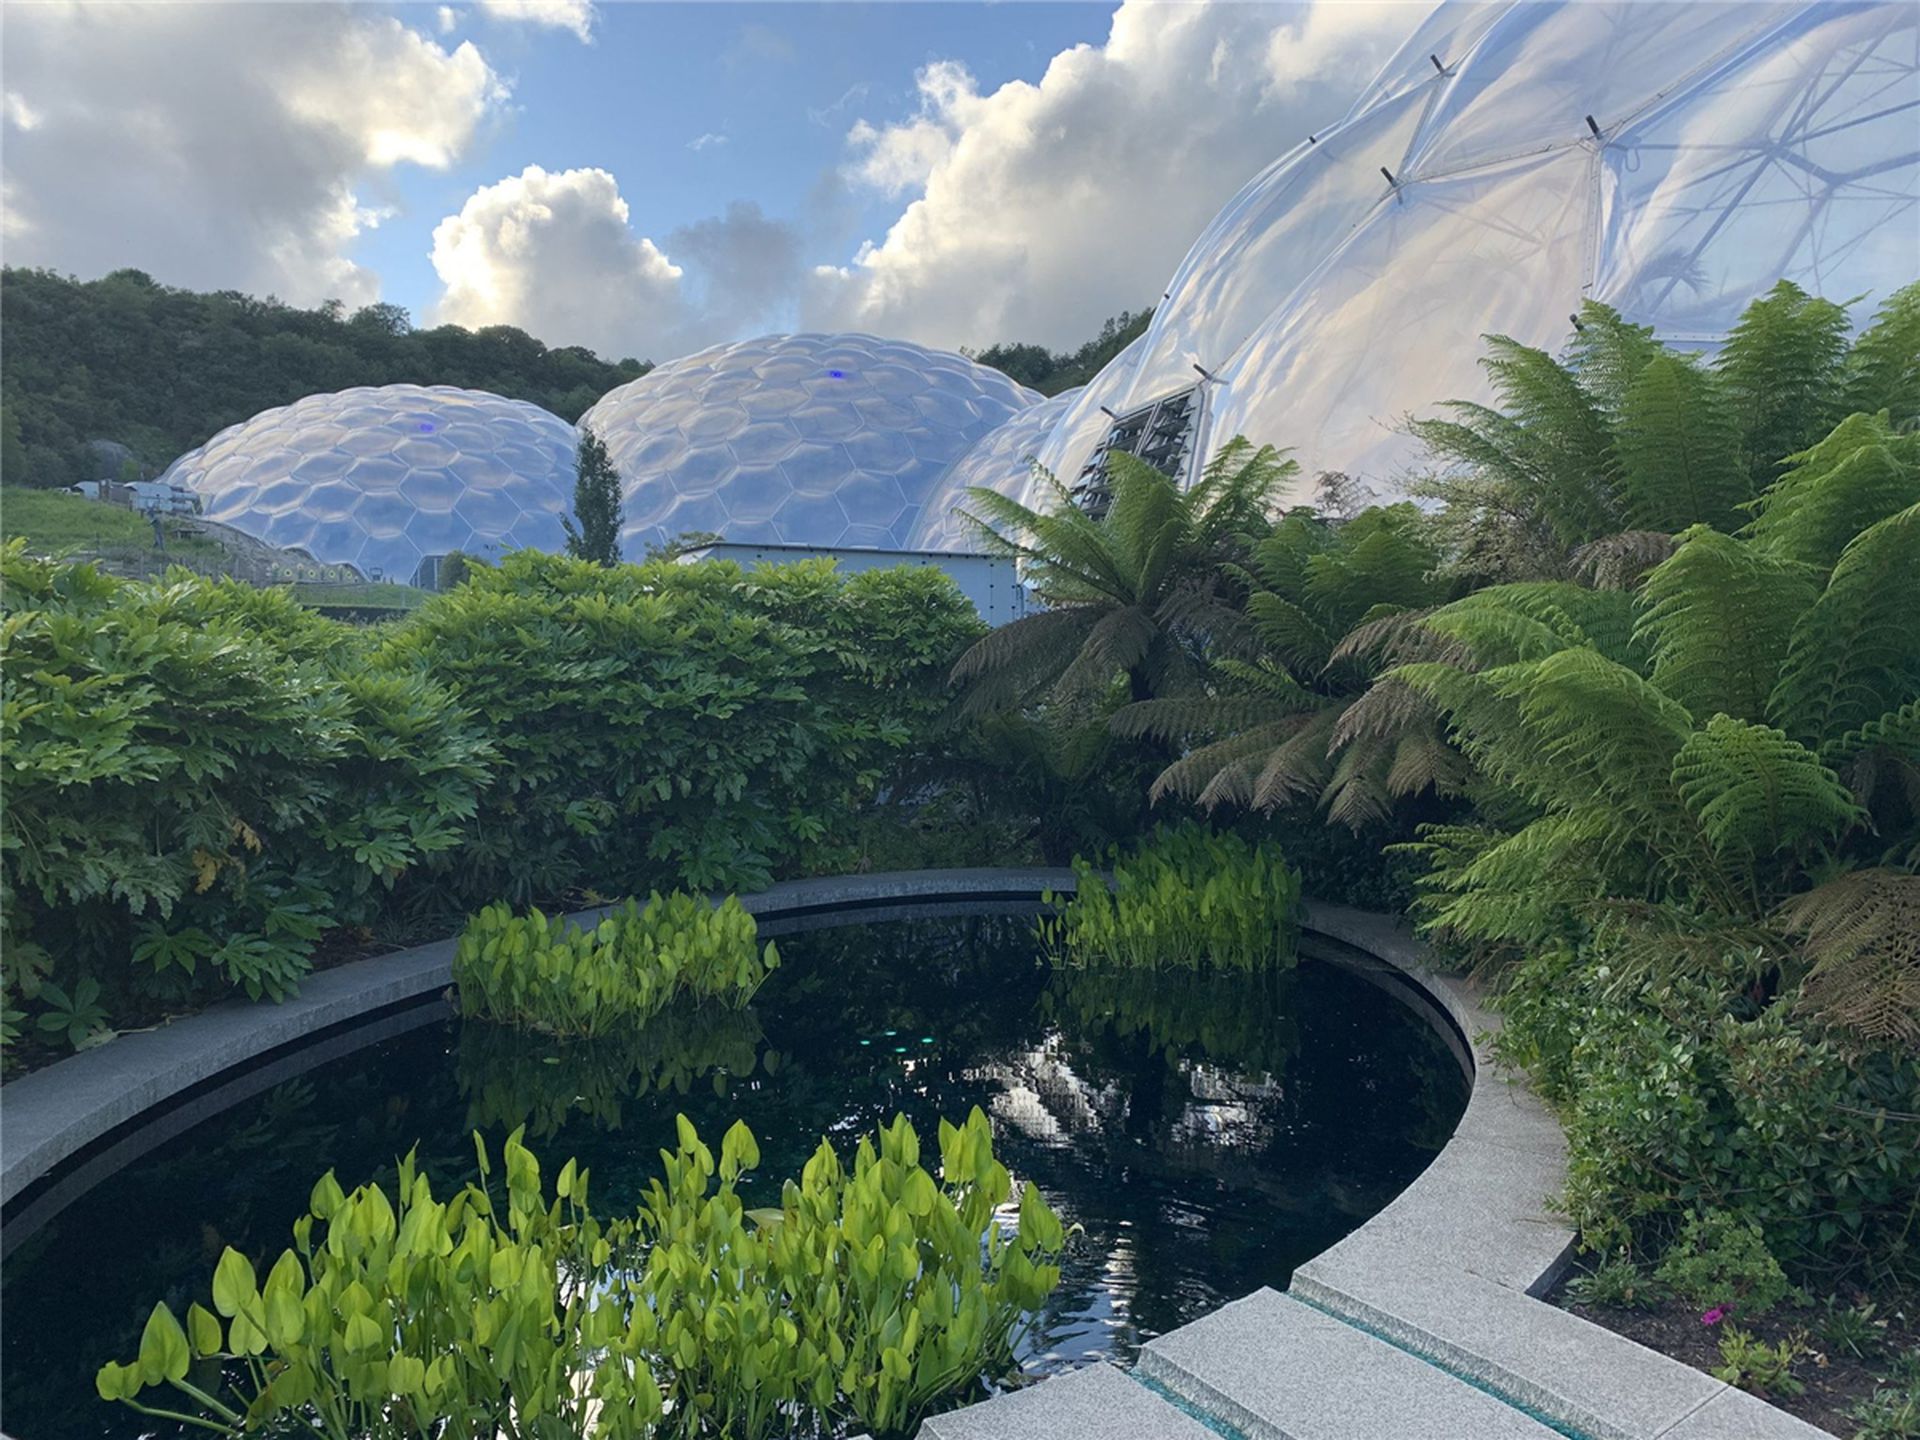 “伊甸园项目”是由许多生态系统组成的人造自然界，图中这些热塑性圆屋顶，仅仅是伊甸园项目的一小部分。（Twitter@JenniferJJacobs）